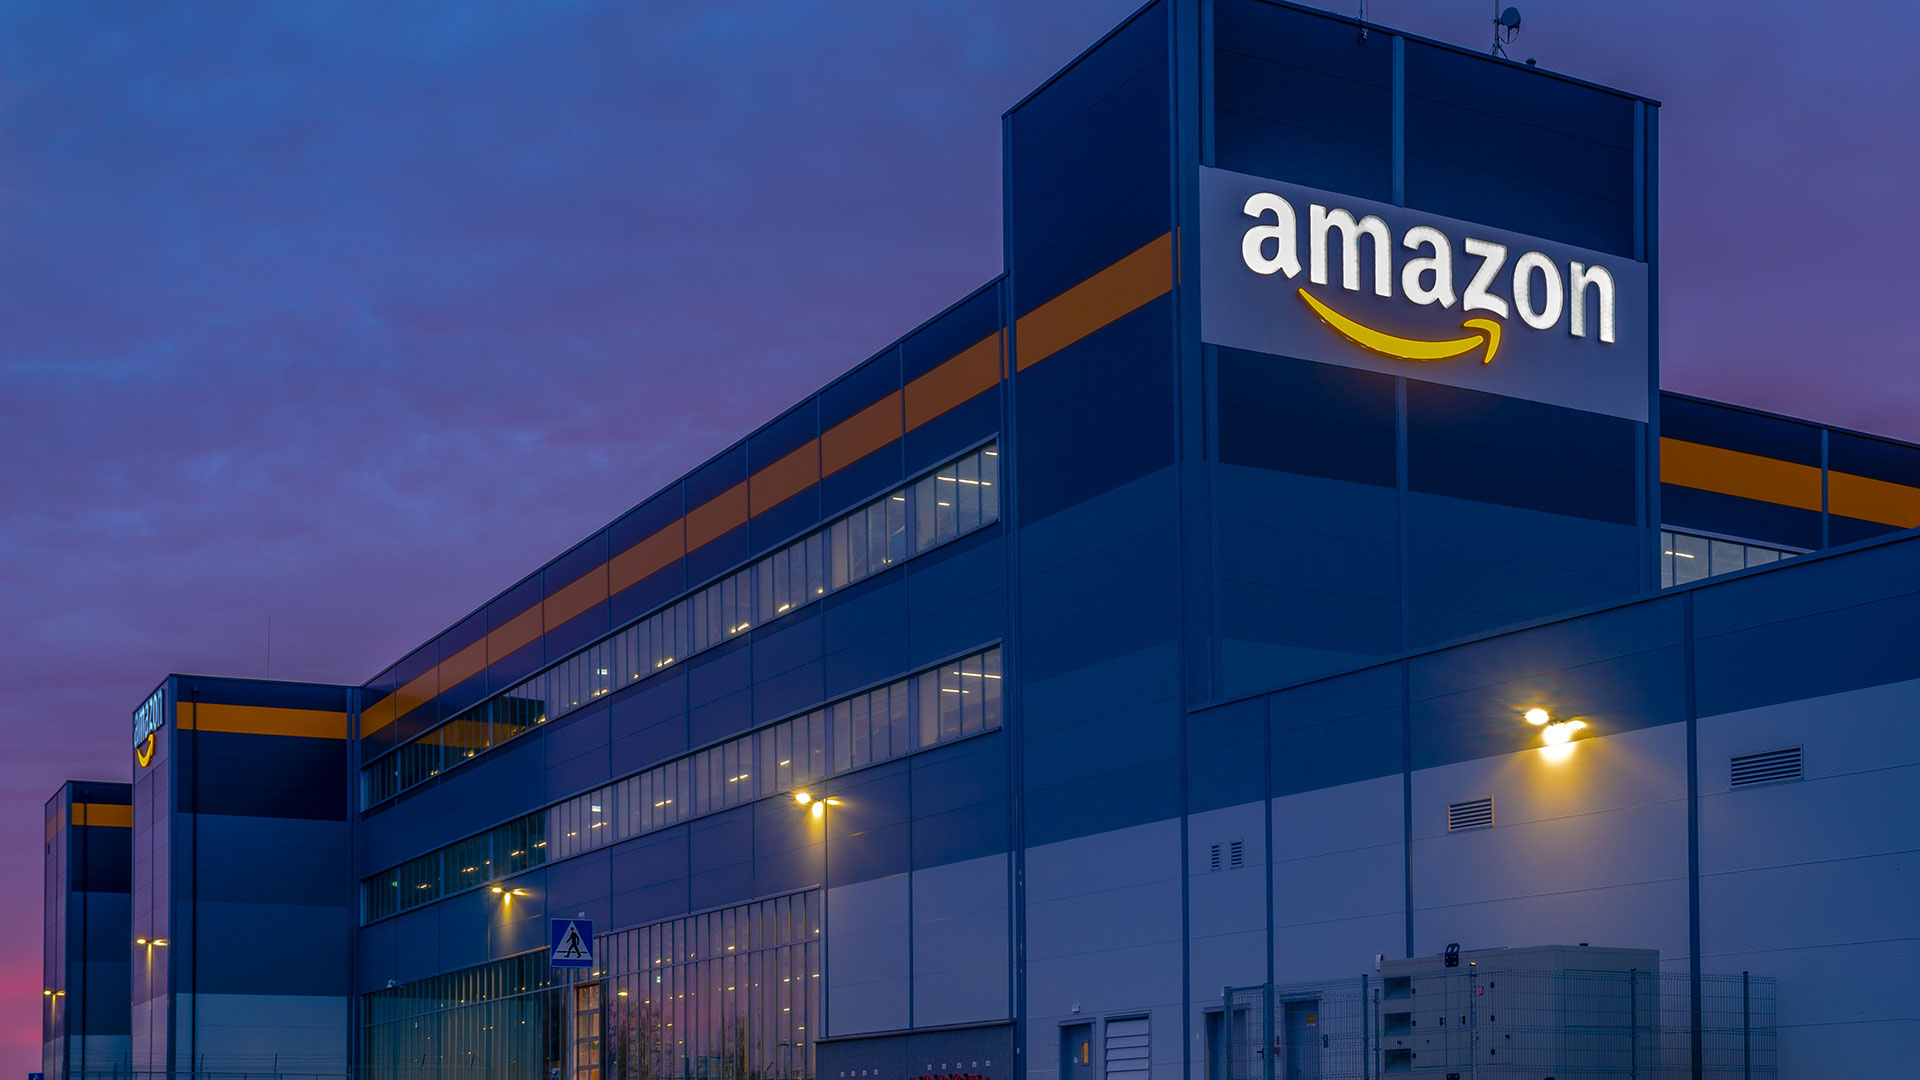 Amazon: Acquired a robotics company Kiva Systems for $775 million in 2012. 1920x1080 Full HD Wallpaper.